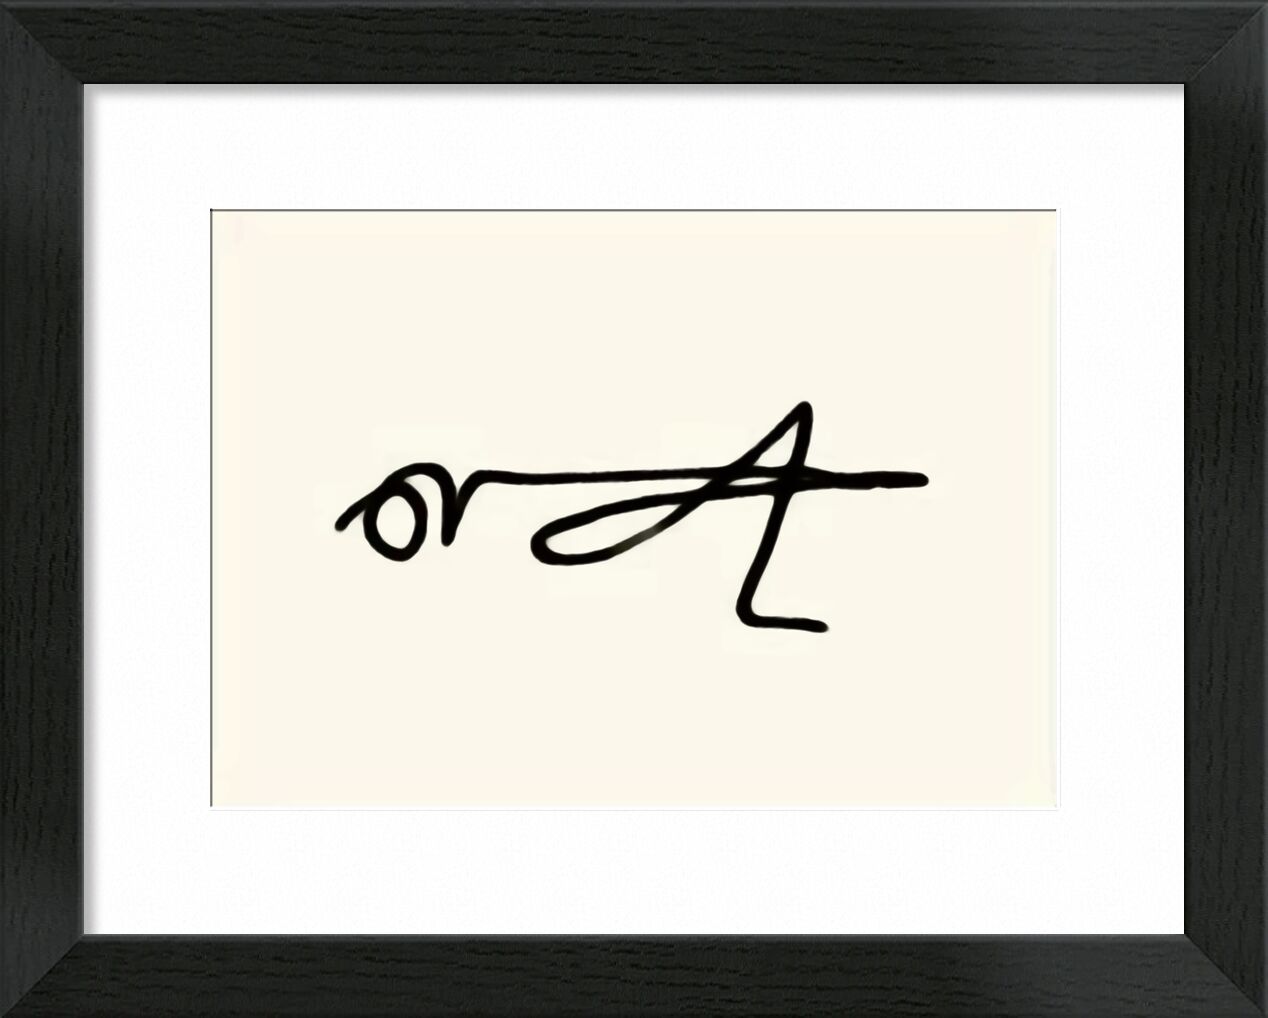 The Grasshopper - Picasso desde Bellas artes, Prodi Art, picasso, dibujo, dibujo lineal, Saltamontes